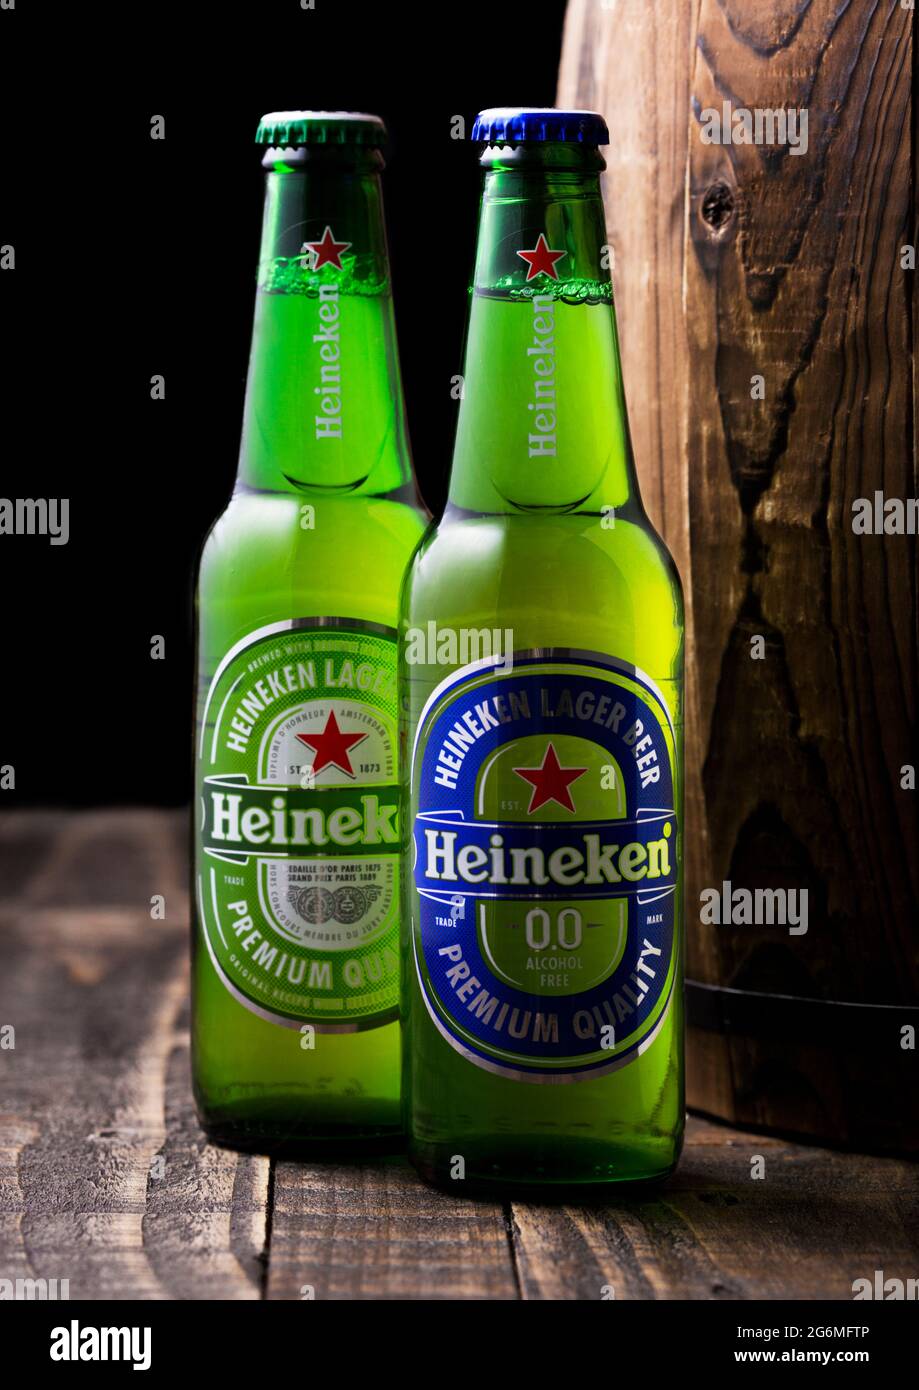 LONDRES, Royaume-Uni - 27 AVRIL 2018 : bouteilles de Heineken Original et sans alcool bière Lager à côté d'un baril en bois. Heineken est le produit phare de Heine Banque D'Images